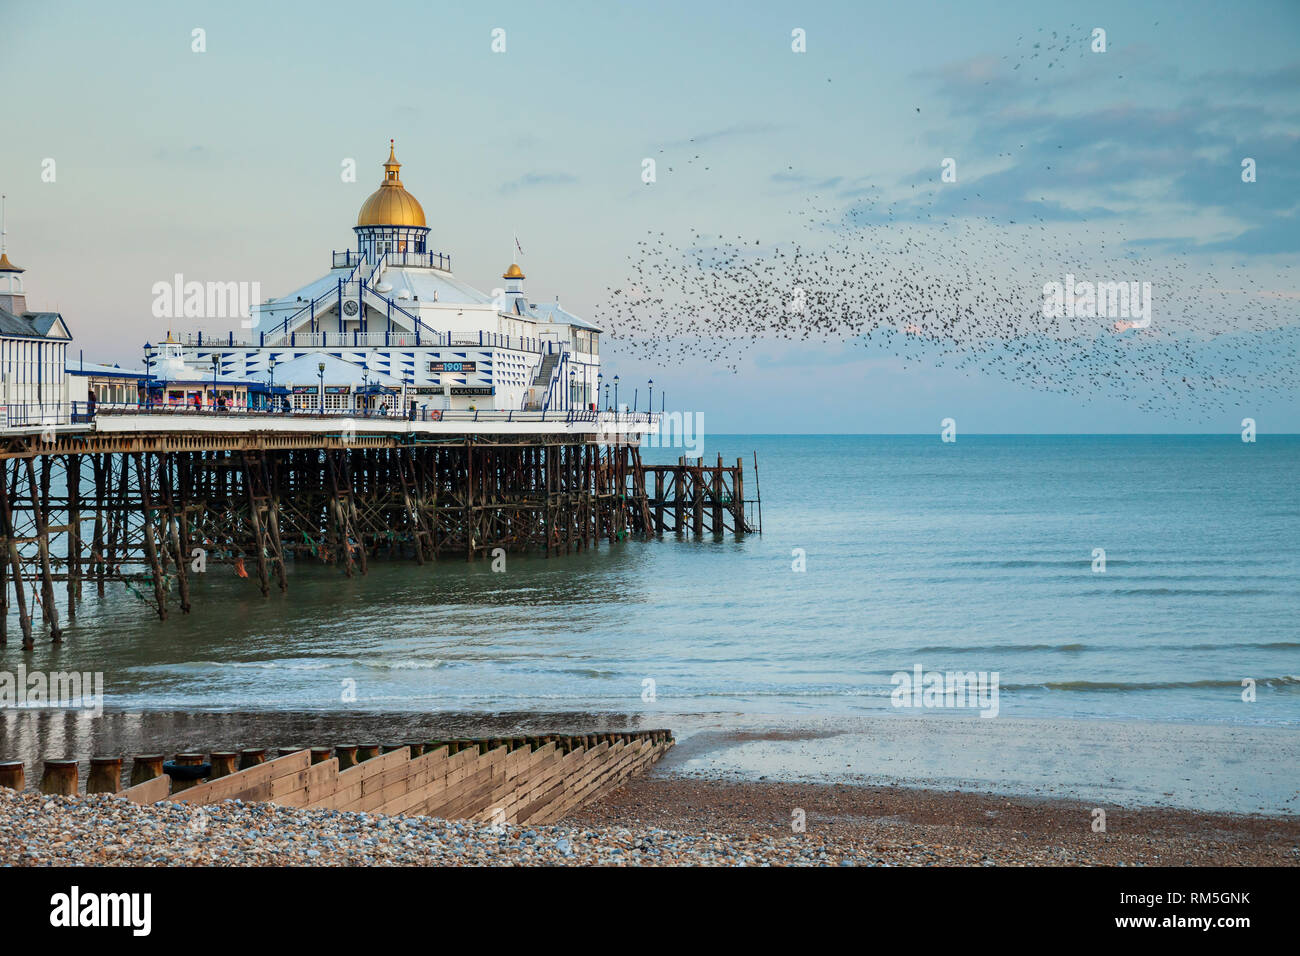 Soirée à Eastbourne Pier dans l'East Sussex, Angleterre. Banque D'Images